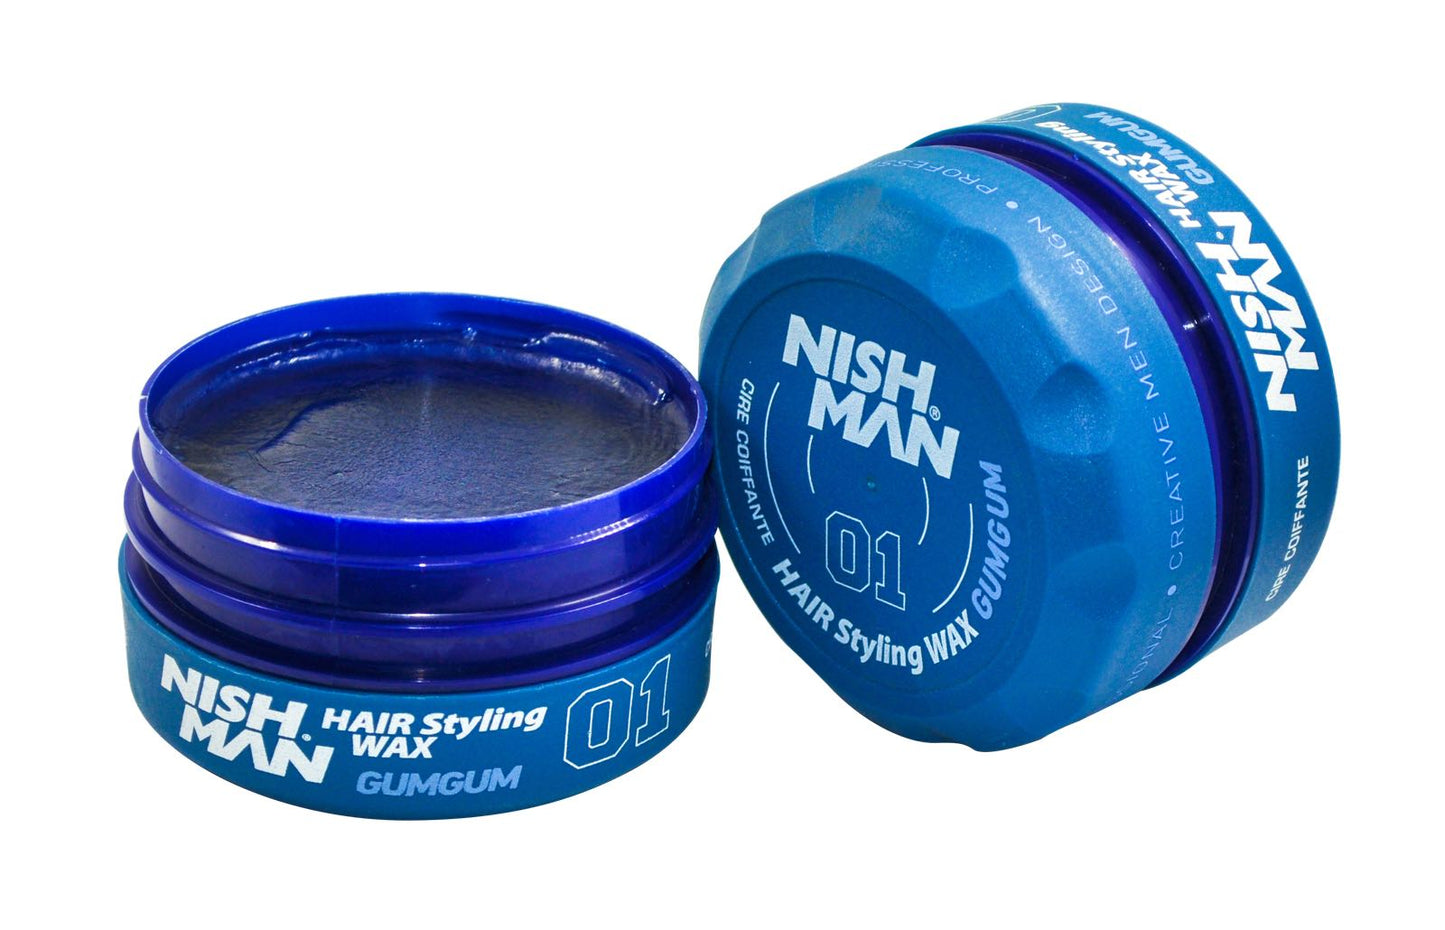 NISHMAN Hair Wax 01 Gum Gum 150ml